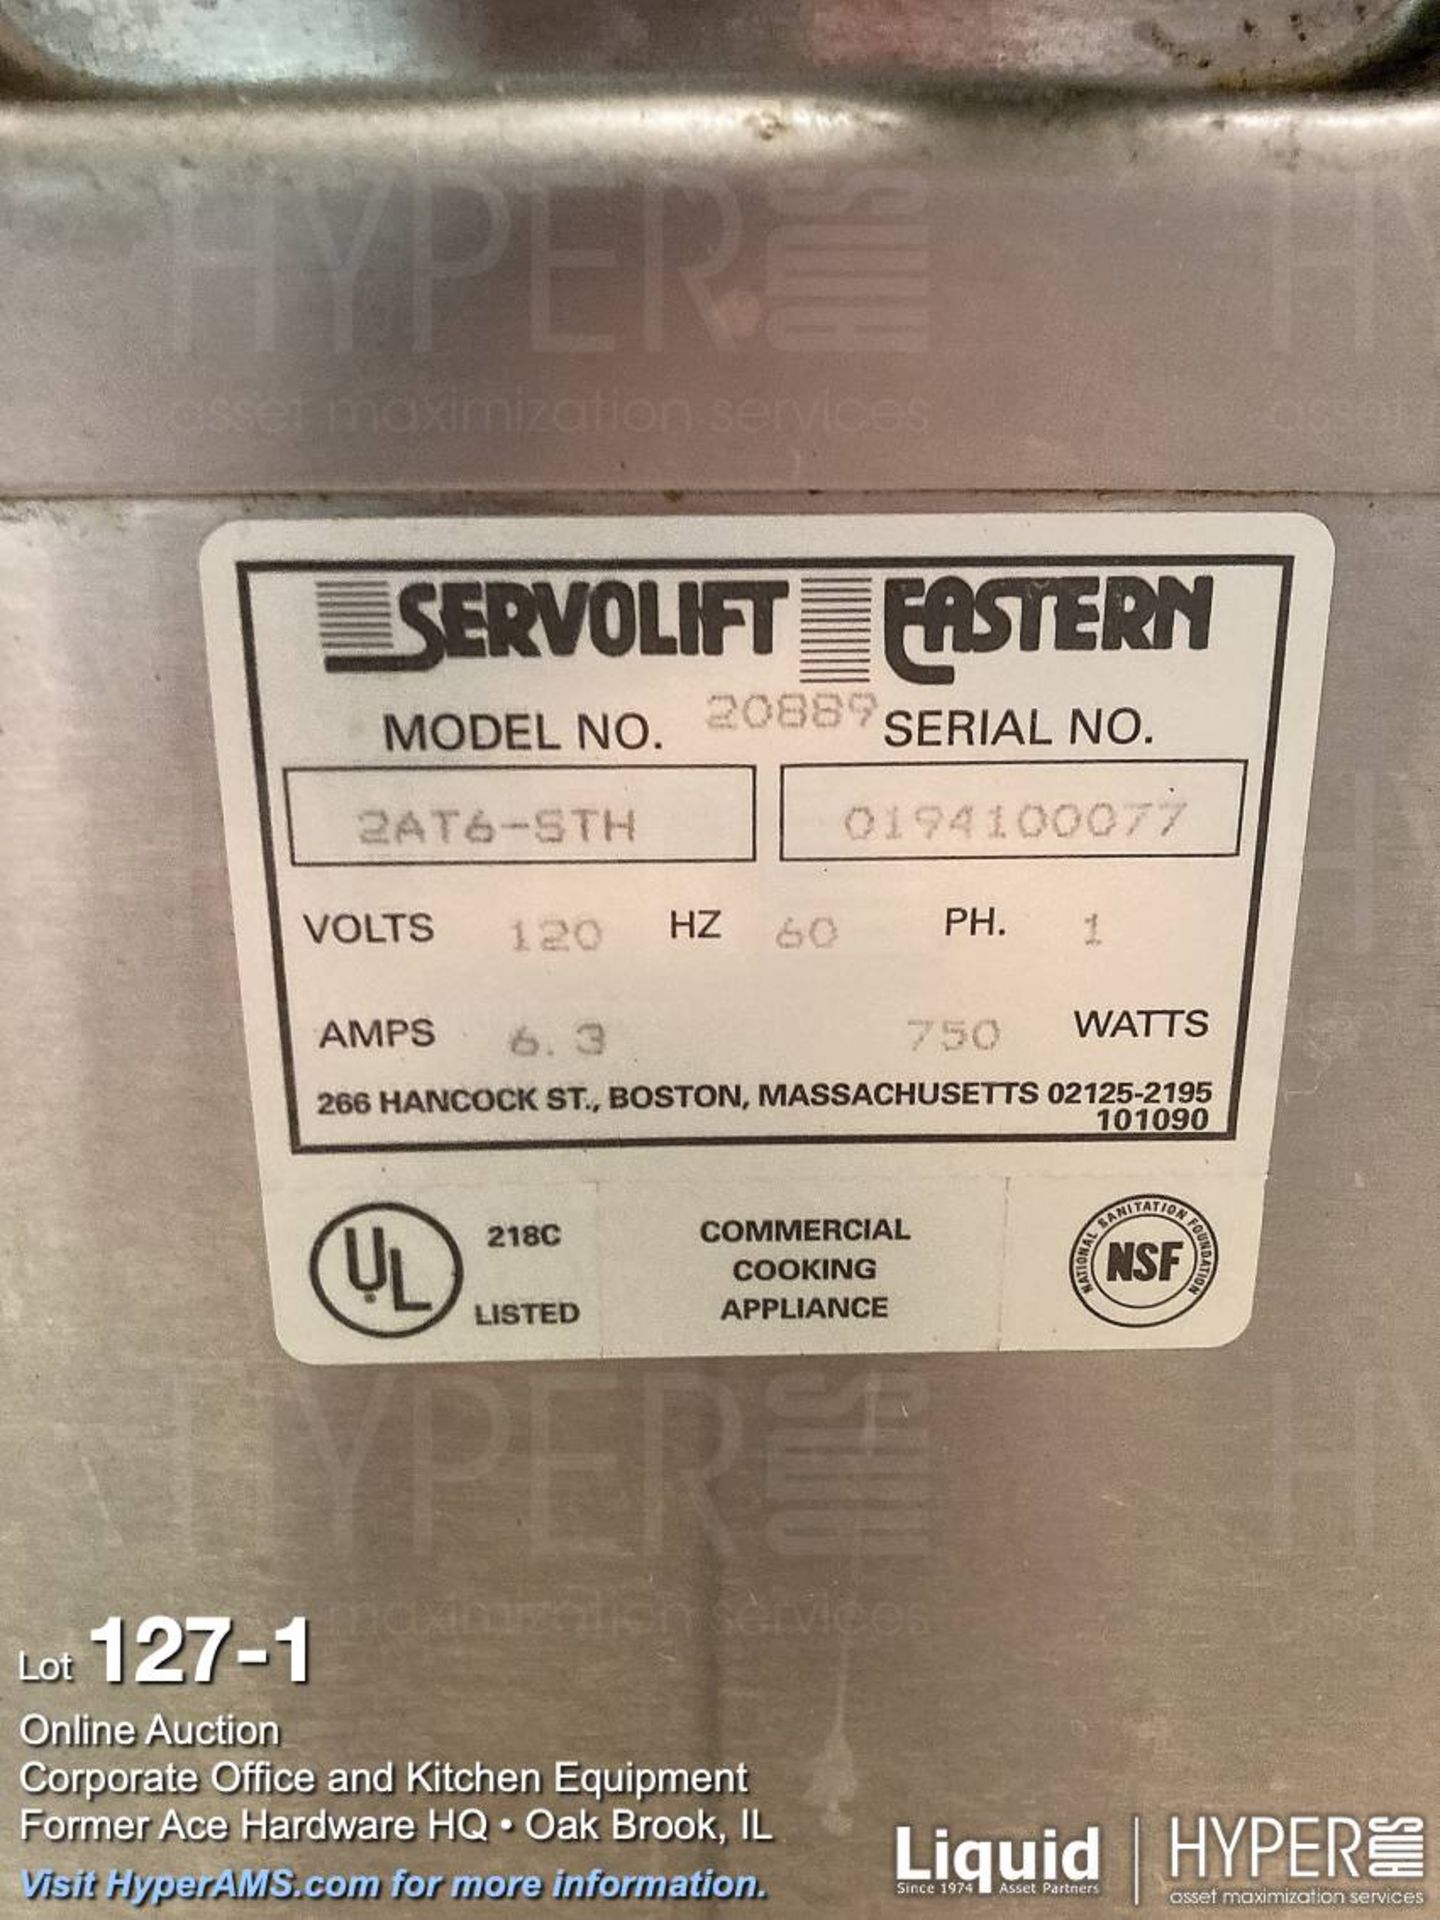 (Lot) (2) Servolift Eastern 2AT6 mobile plate dispenser - Image 2 of 3